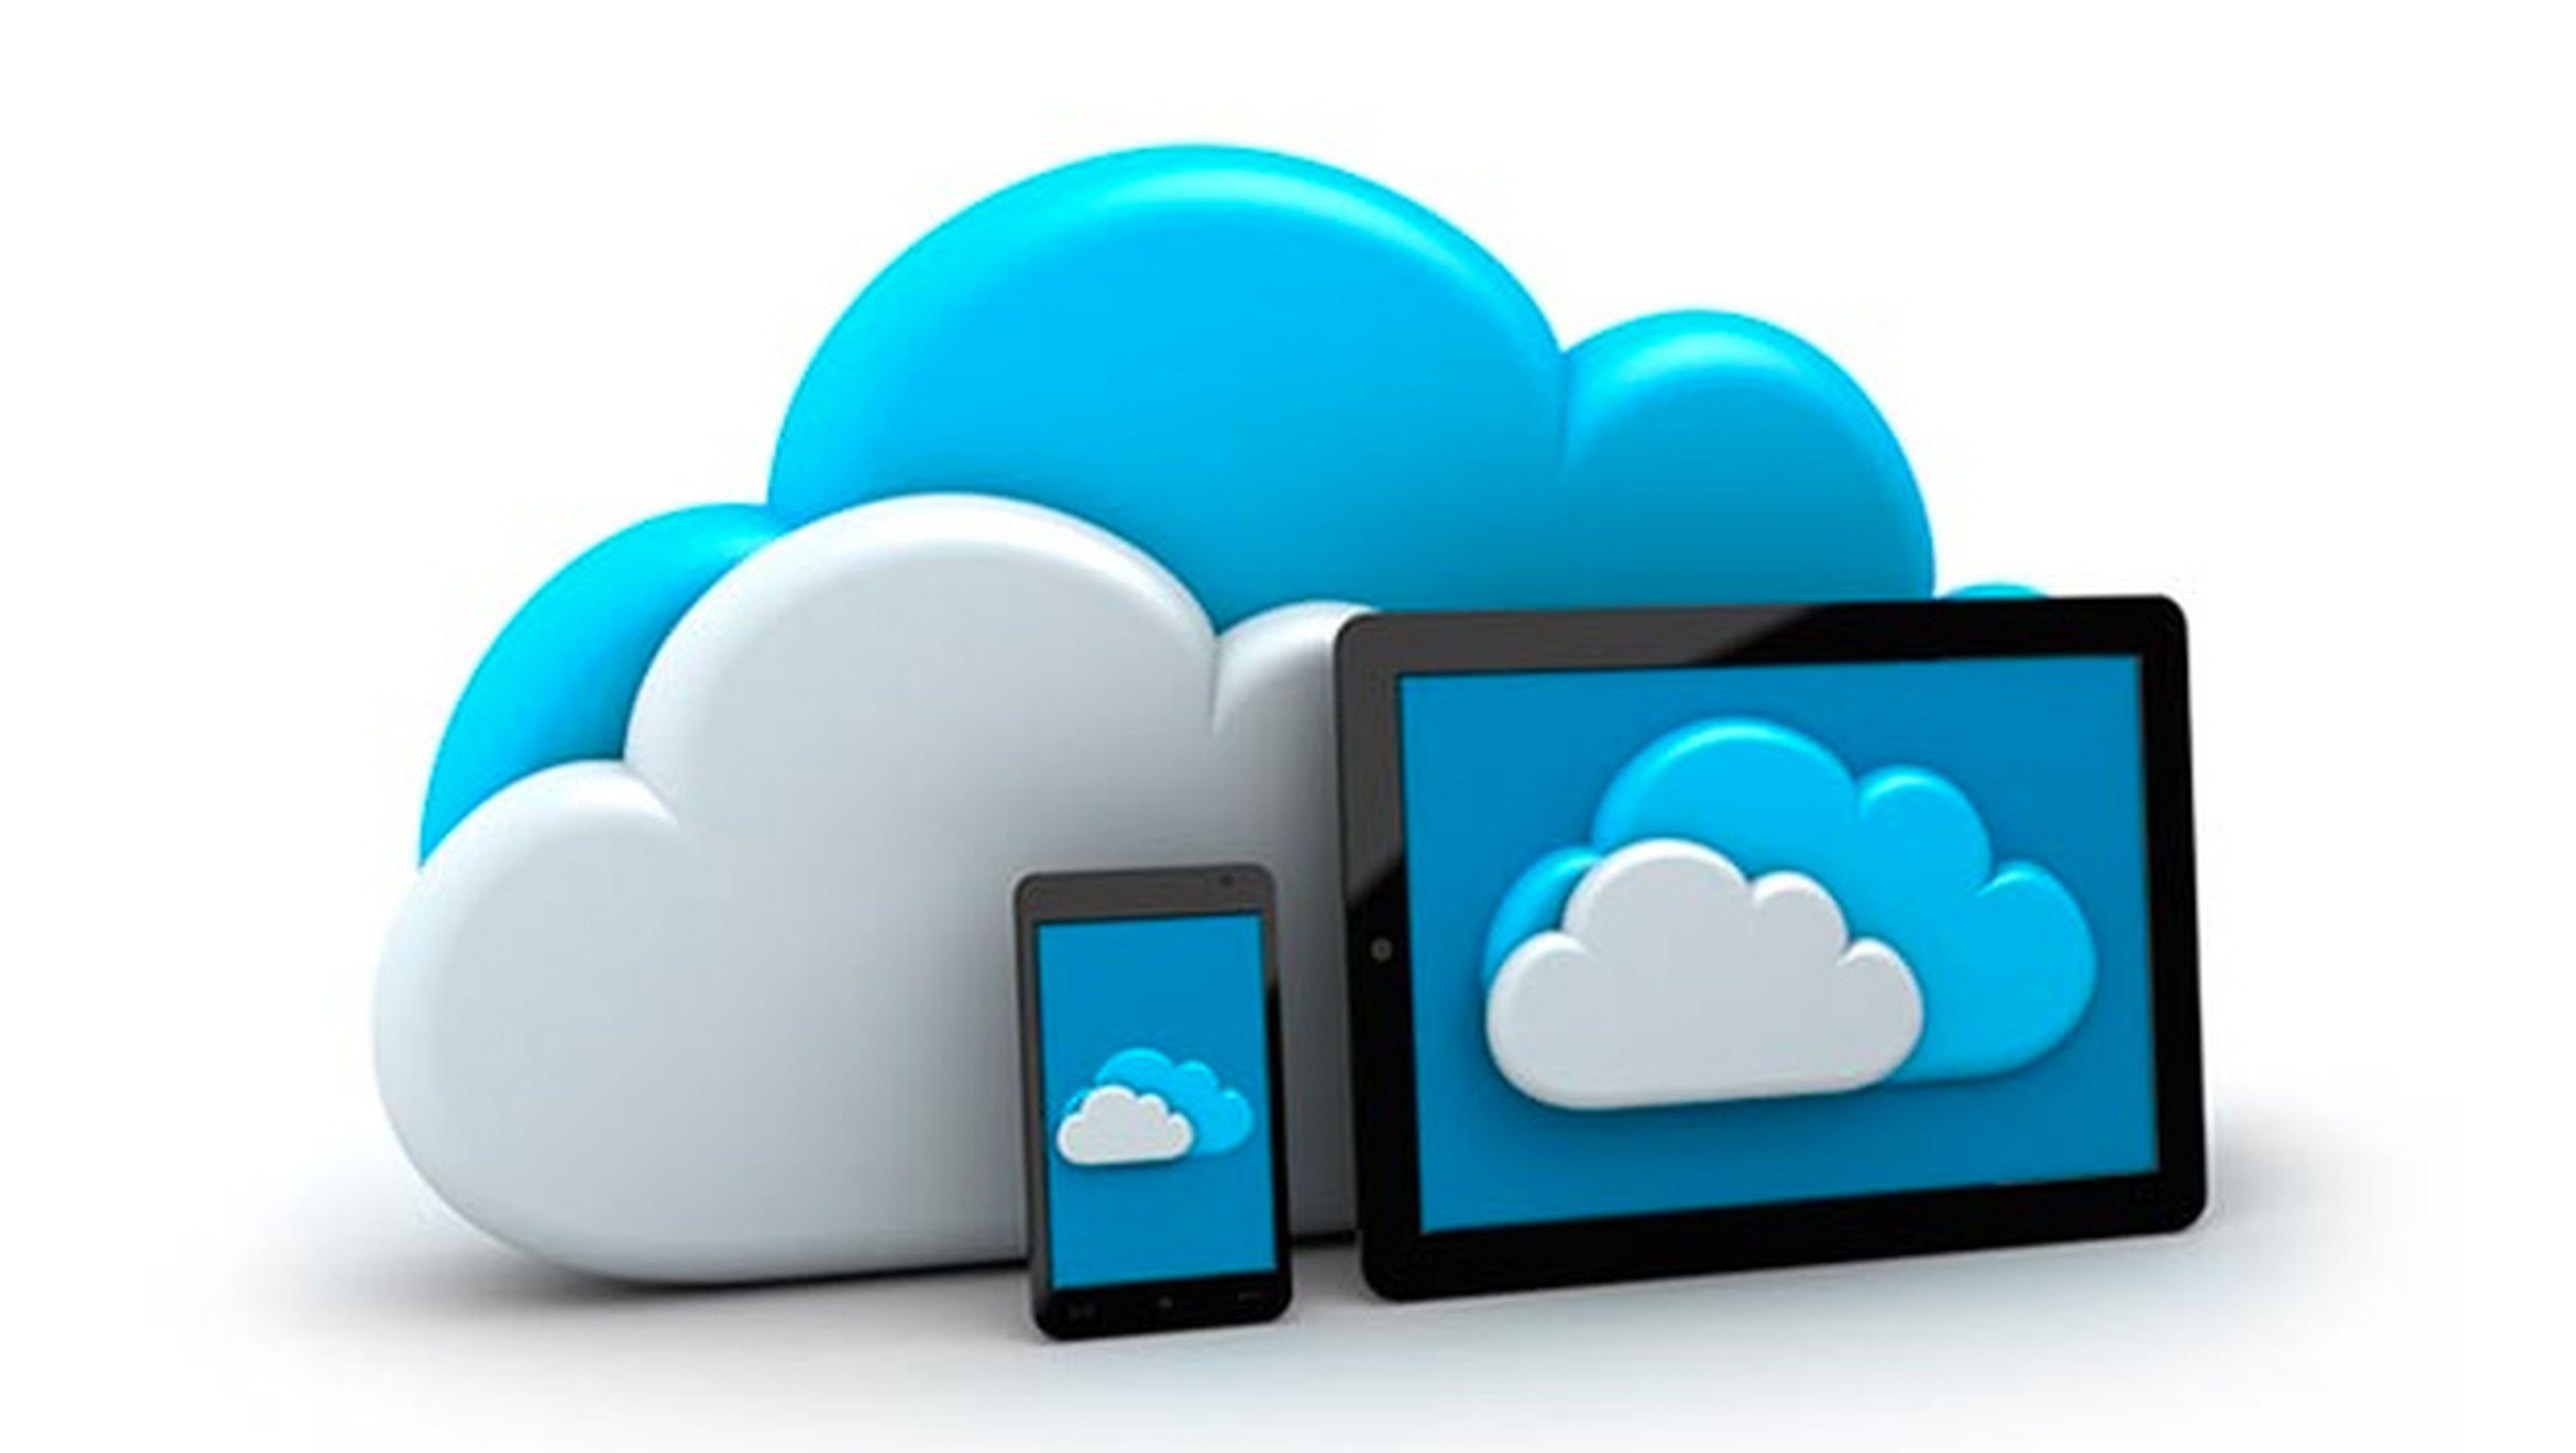 Cloud applications. Облачное хранилище. Облачные технологии. Облачные вычисления. Облачные приложения и сервисы.